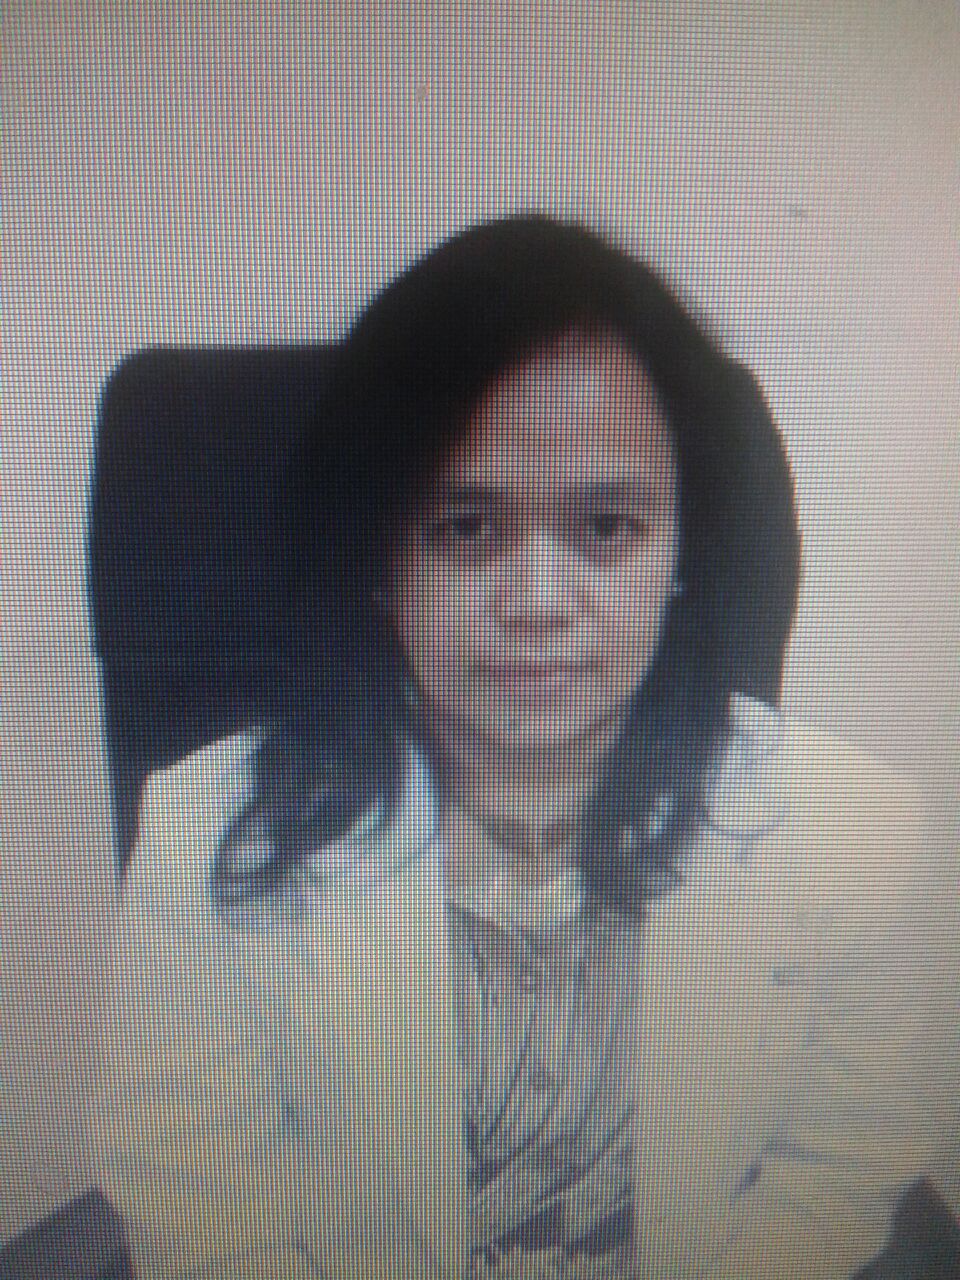 Dr. Elfrida Simatupang